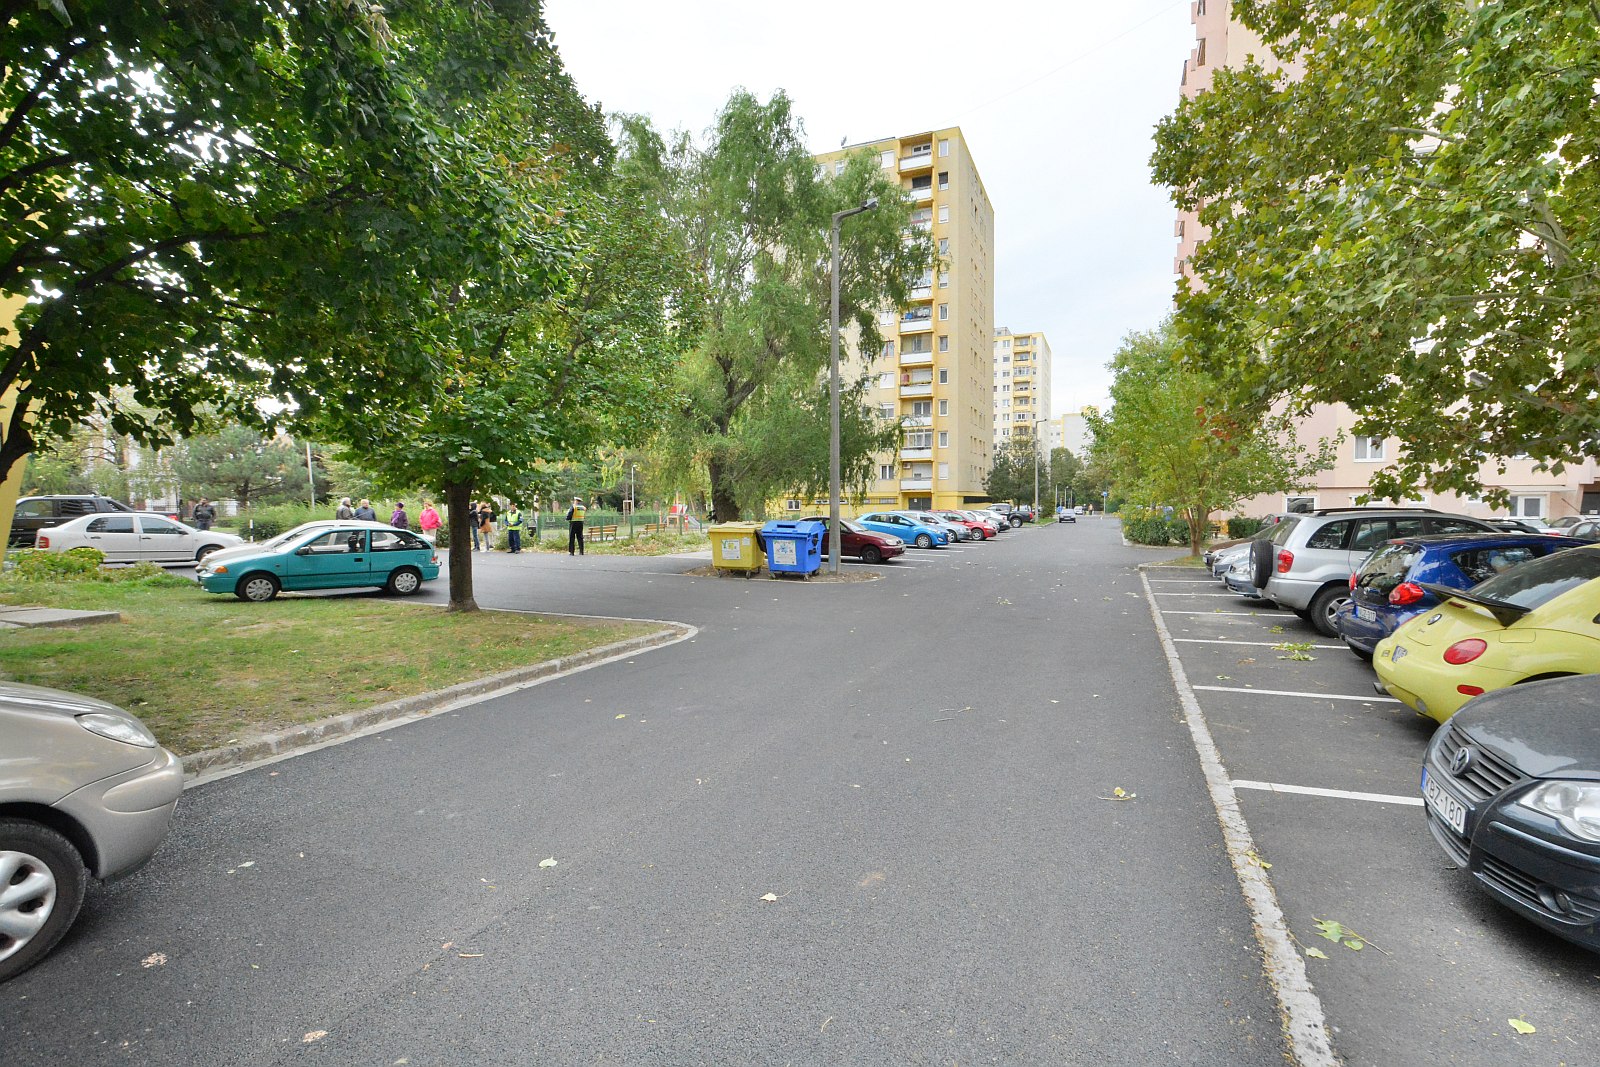 Elkészült az út- és parkolófelújítás a Budai út 92-100 között